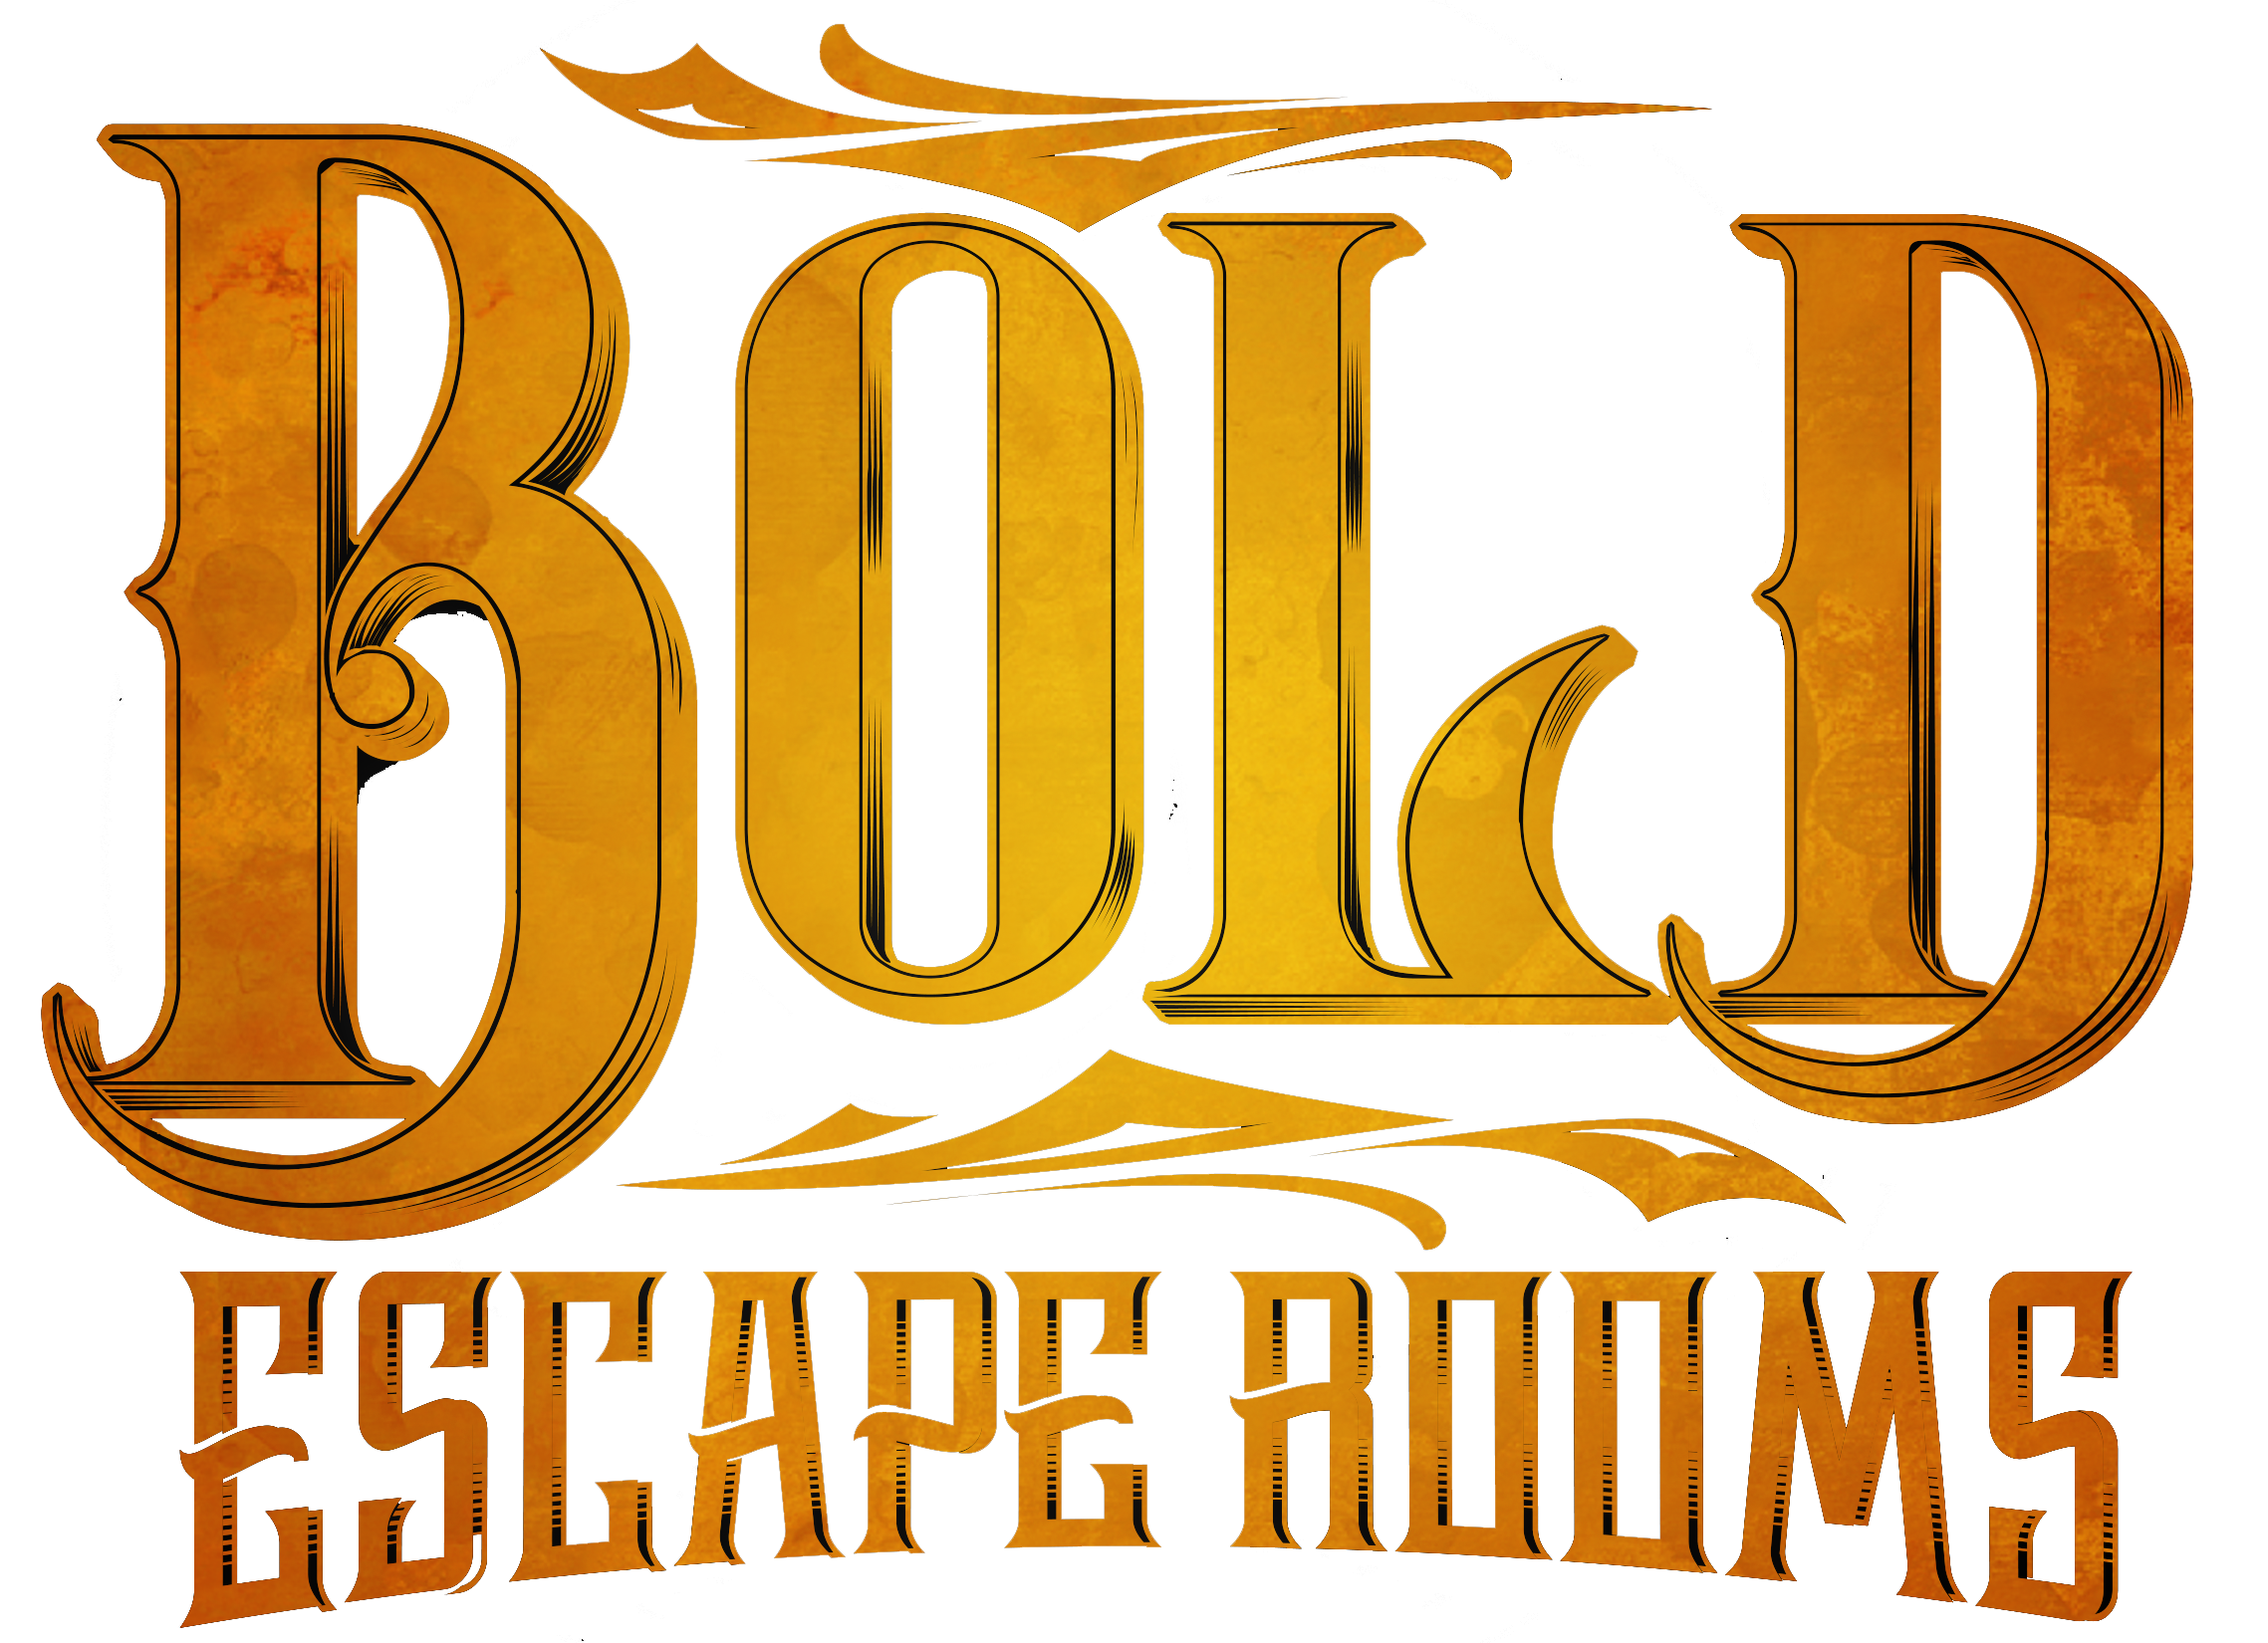 Bold Escape Rooms